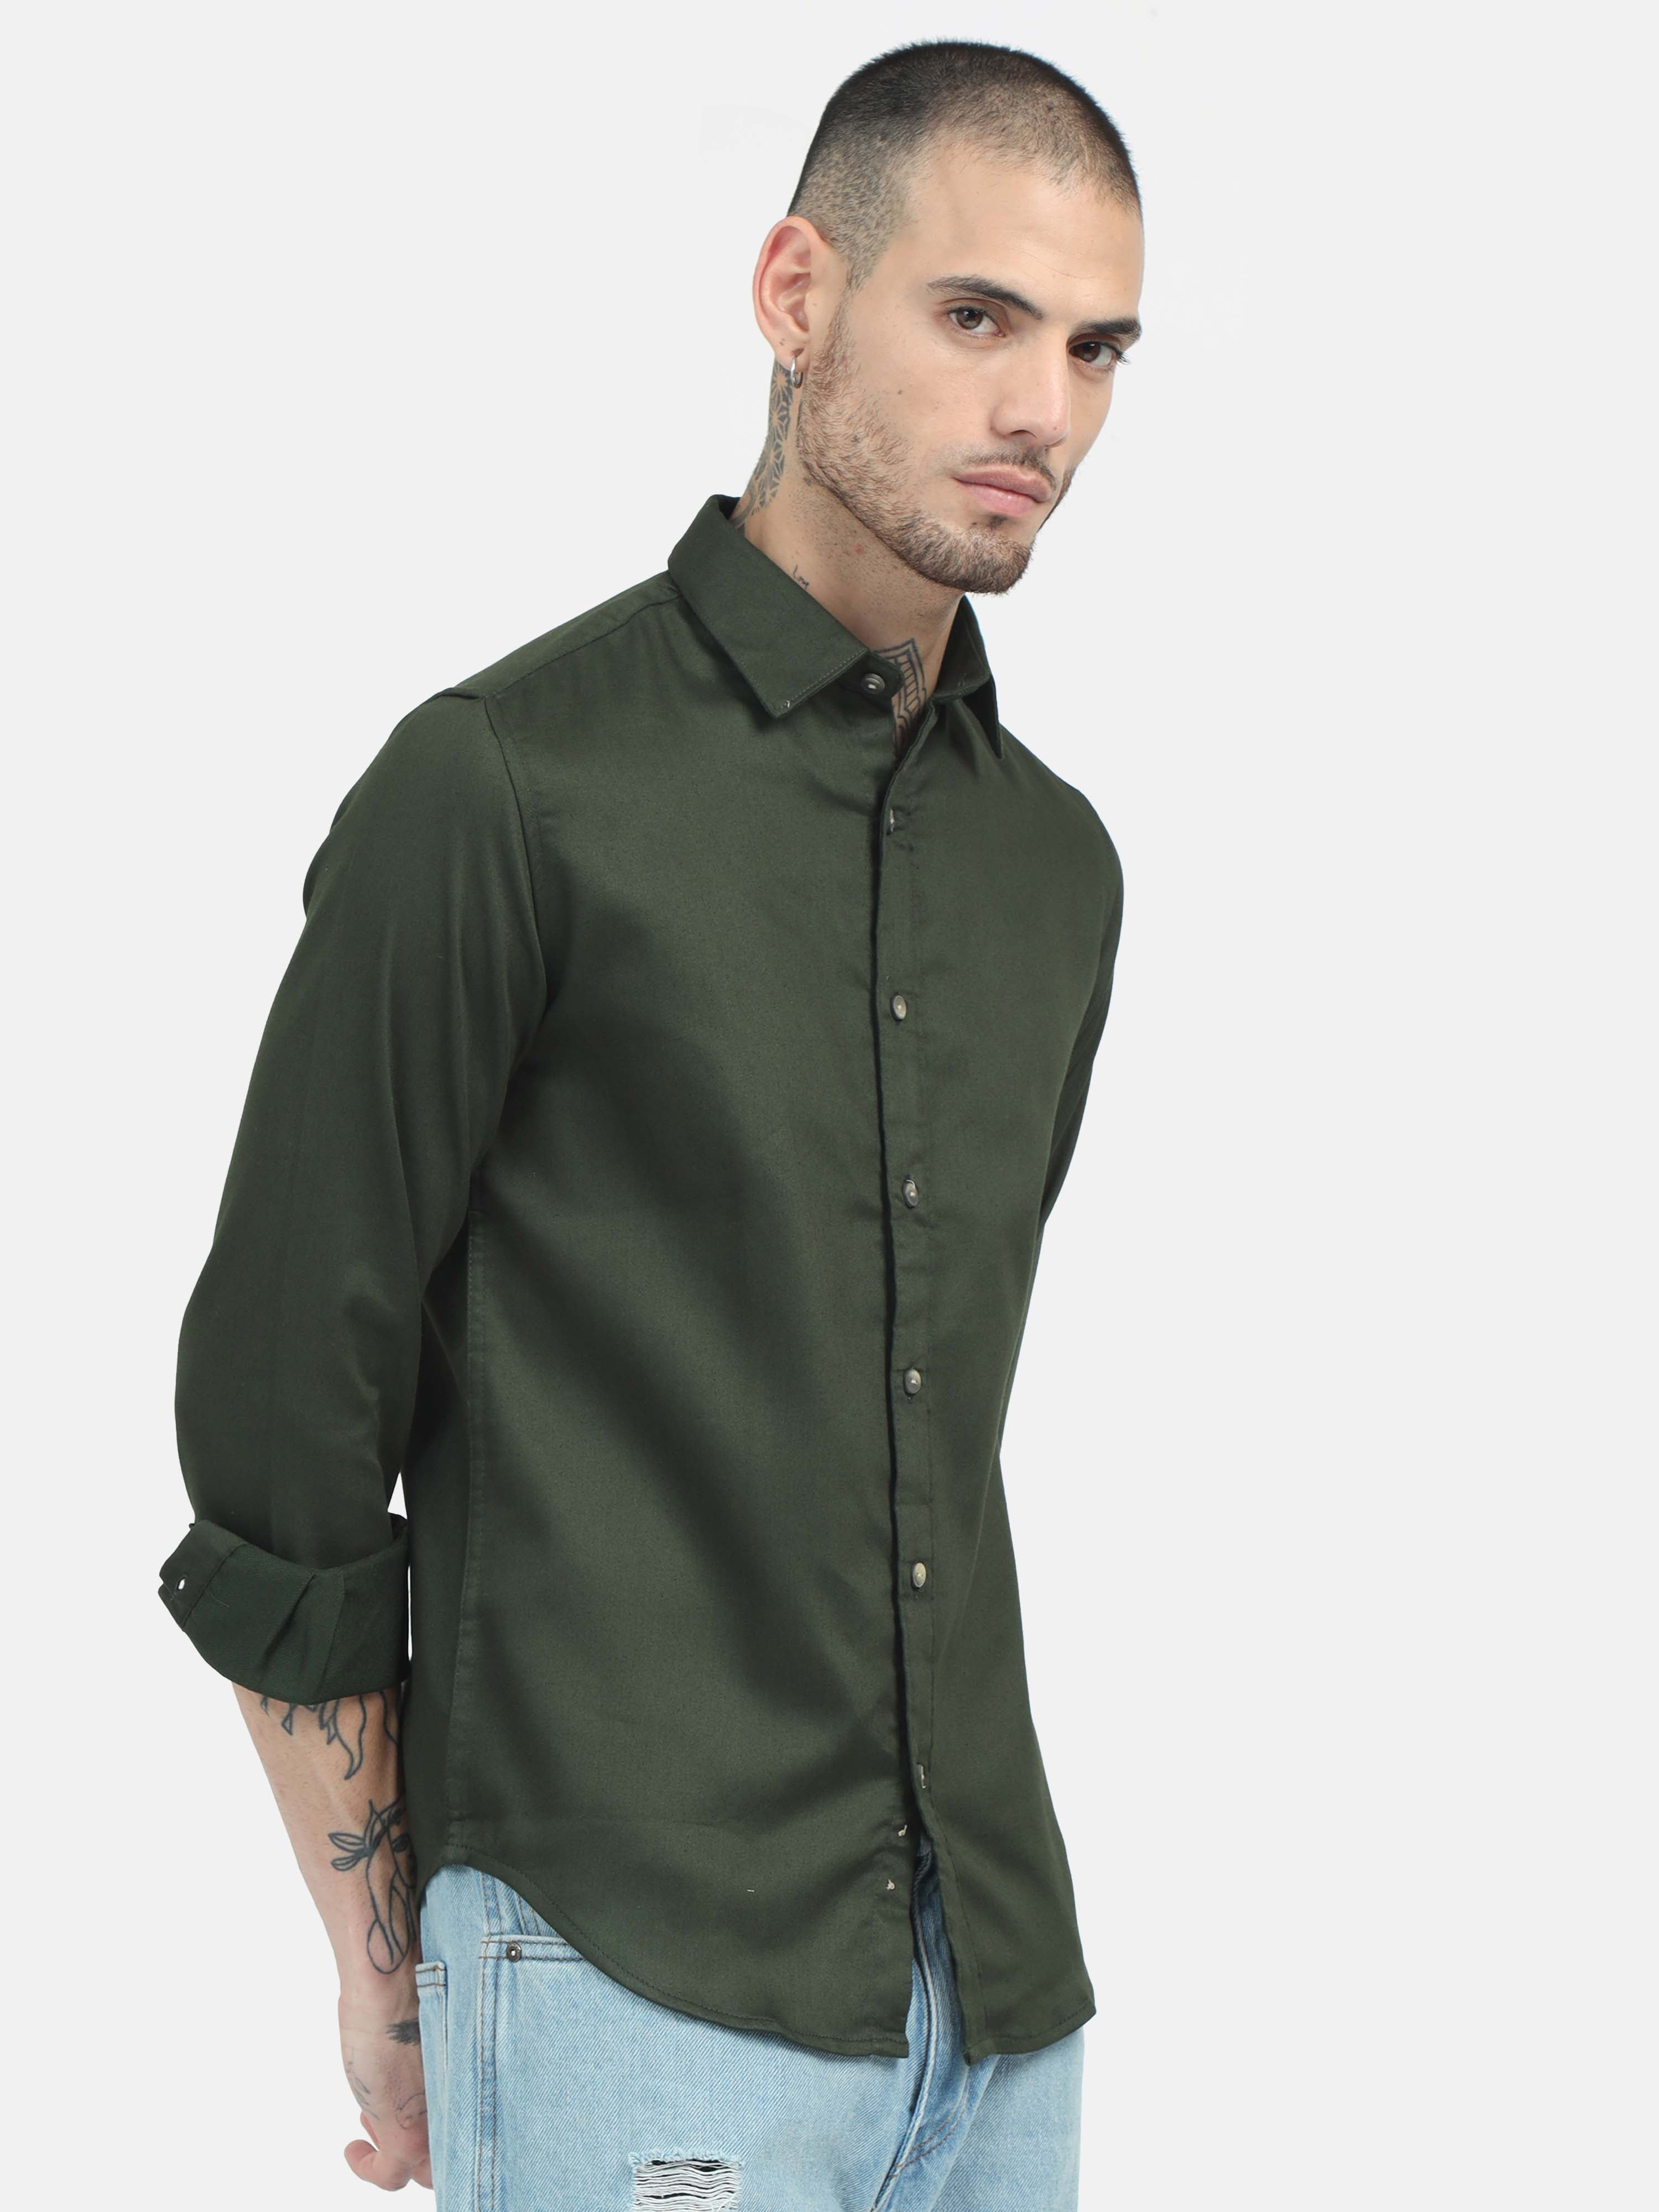 Elecknit Seaweed Green Stretch Shirt